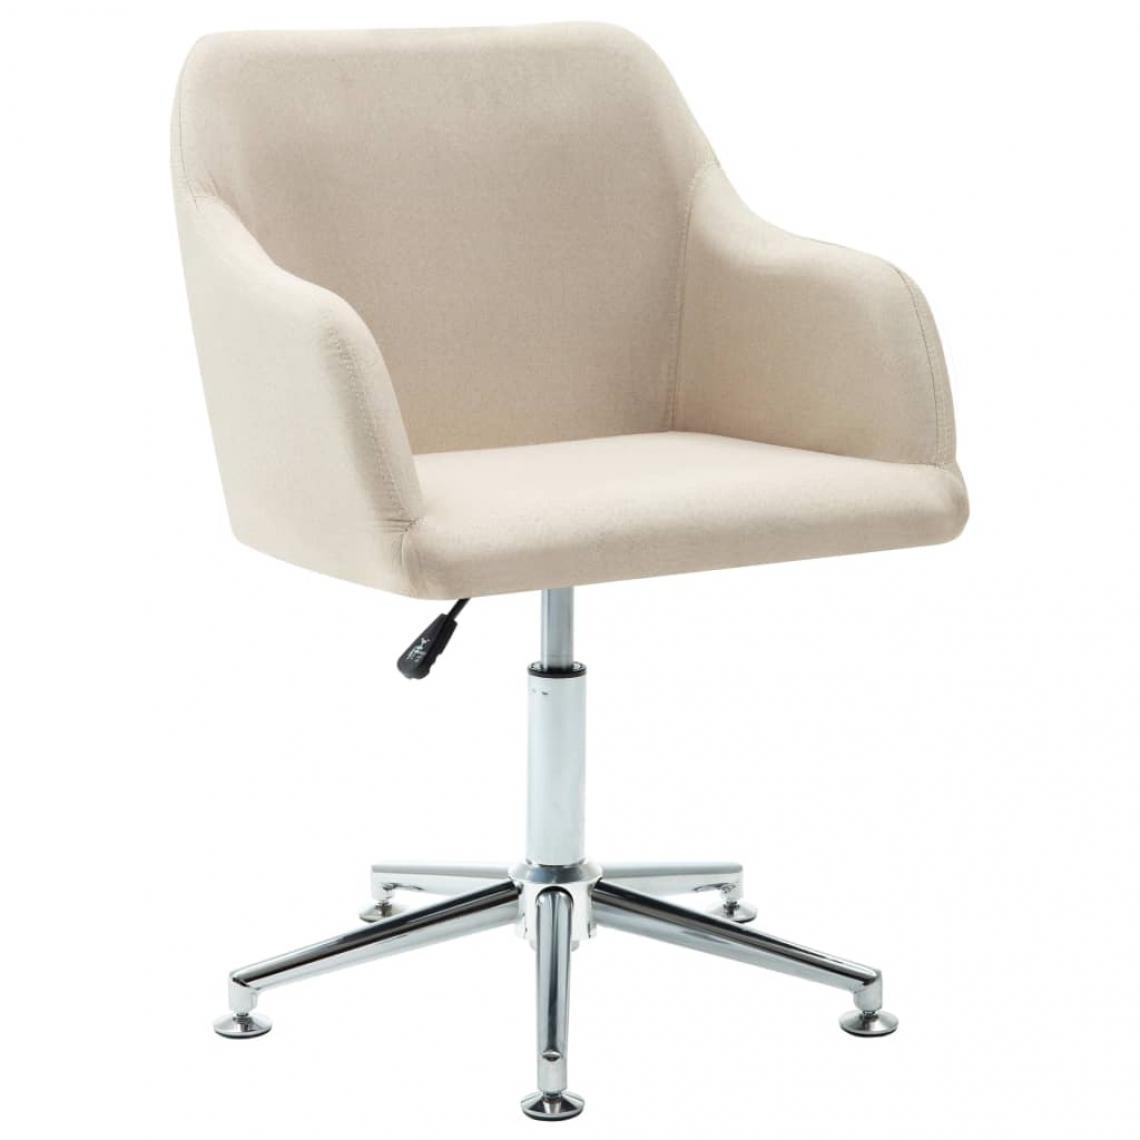 Decoshop26 - Chaise pivotante de salle à manger design contemporain tissu crème CDS020091 - Chaises